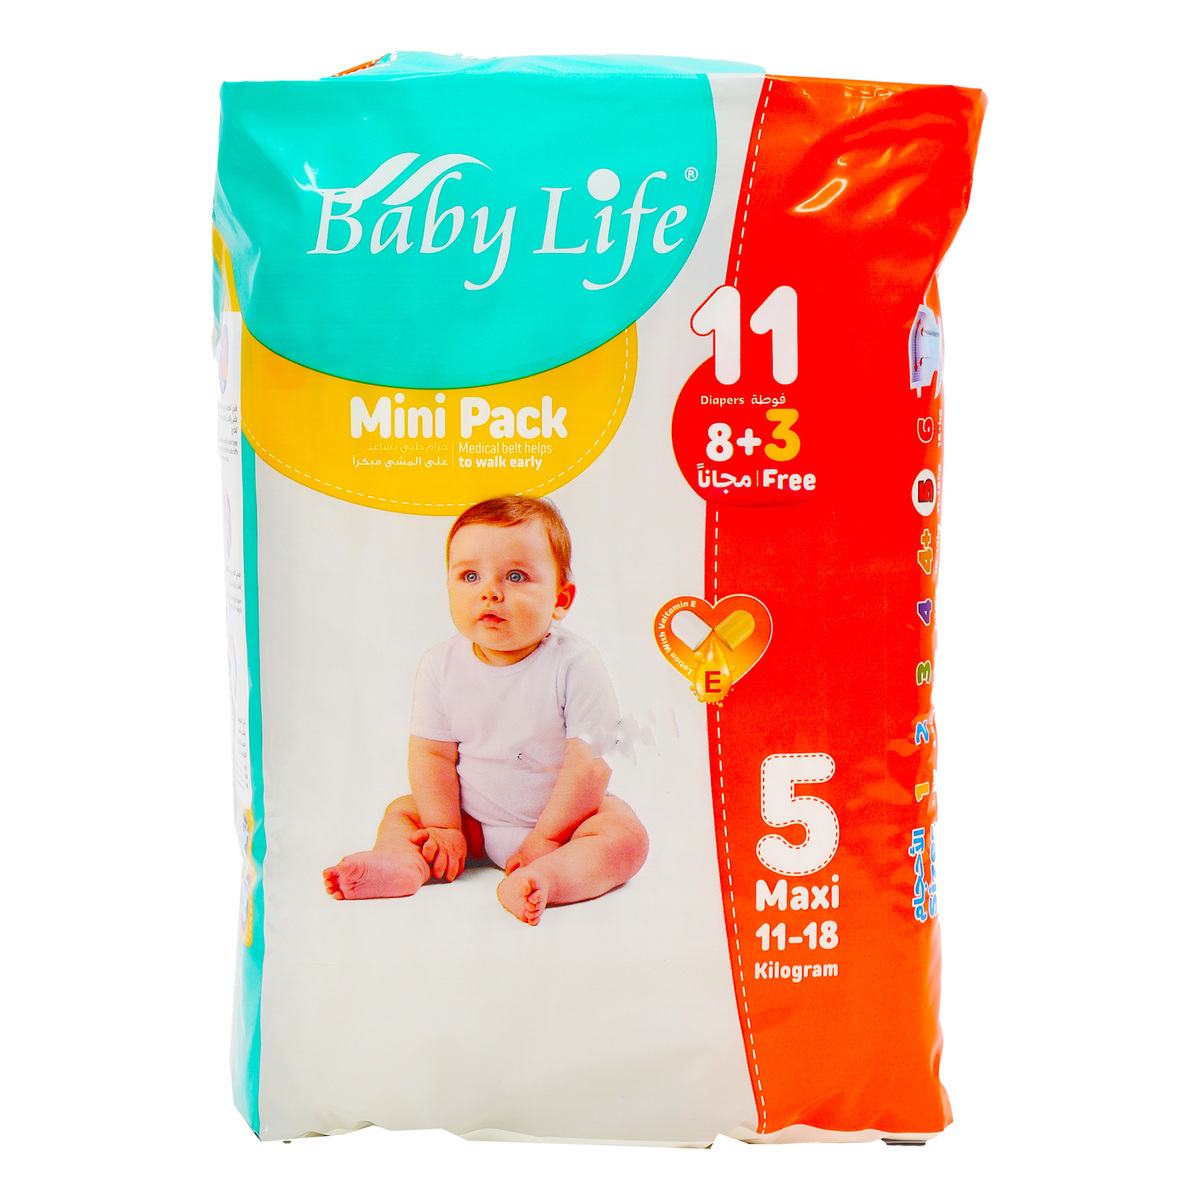 Baby Life Diaper Maxi Size 5 11-18 kg 8 + 3 pcs